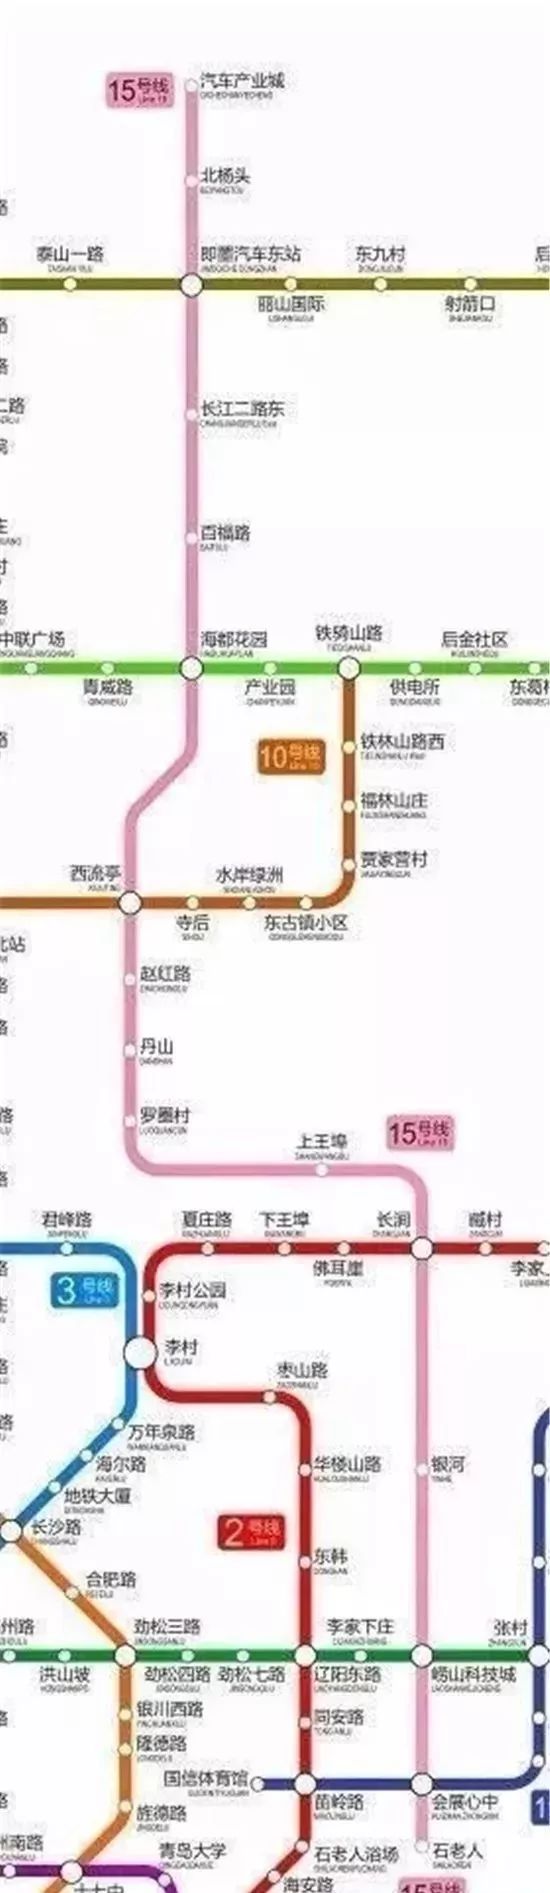 地铁15号线,是连接崂山-李沧-城阳-即墨的有一条南北干线.